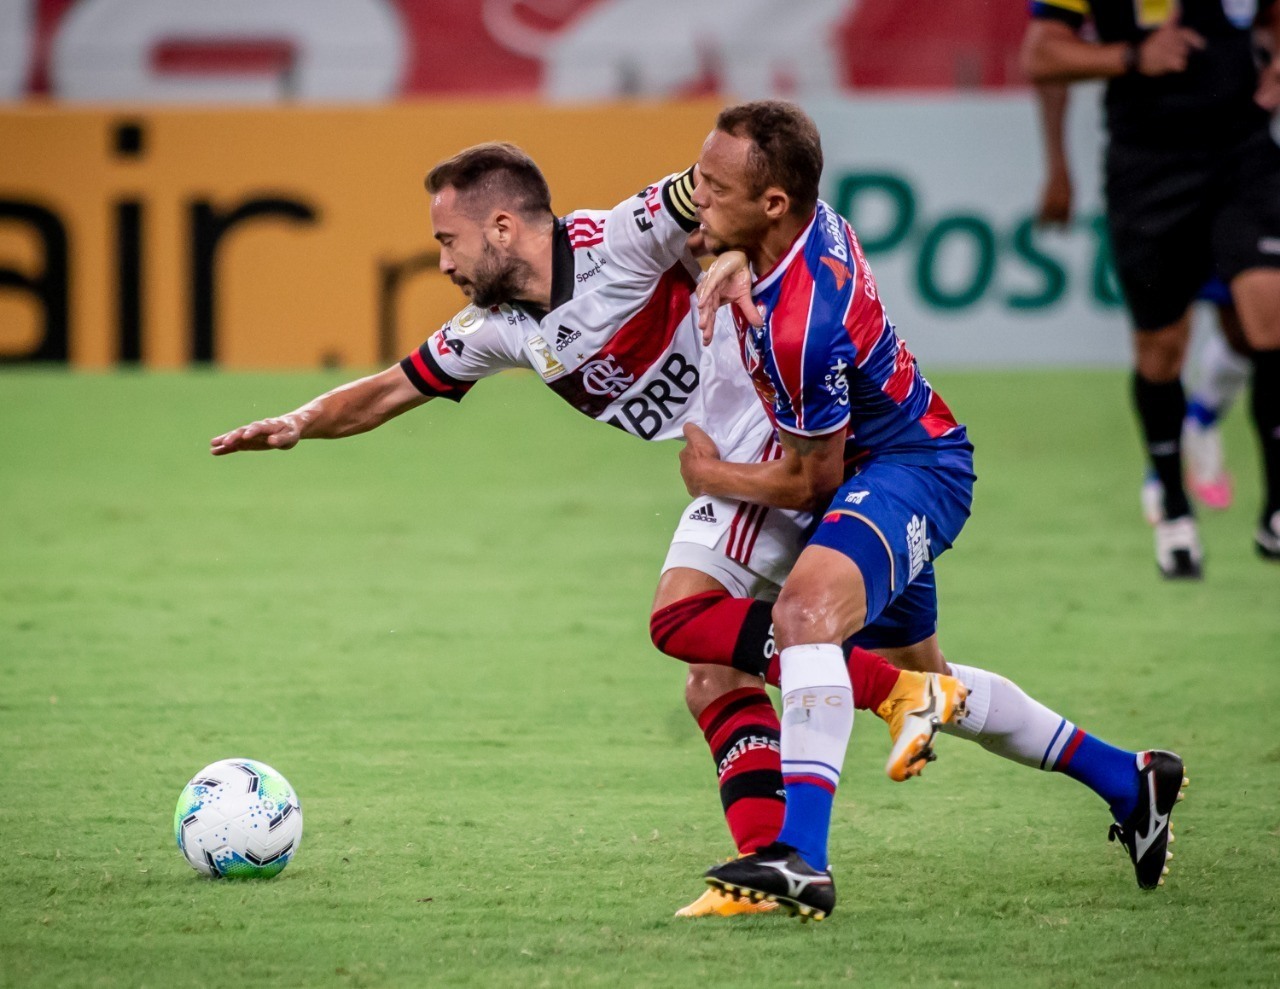 Doentes por Futebol - Em 3 jogos com Dorival, Vittinho deu 3 assistências.  Parece ter encontrado o caminho com o treinador. 📷 André Mourão